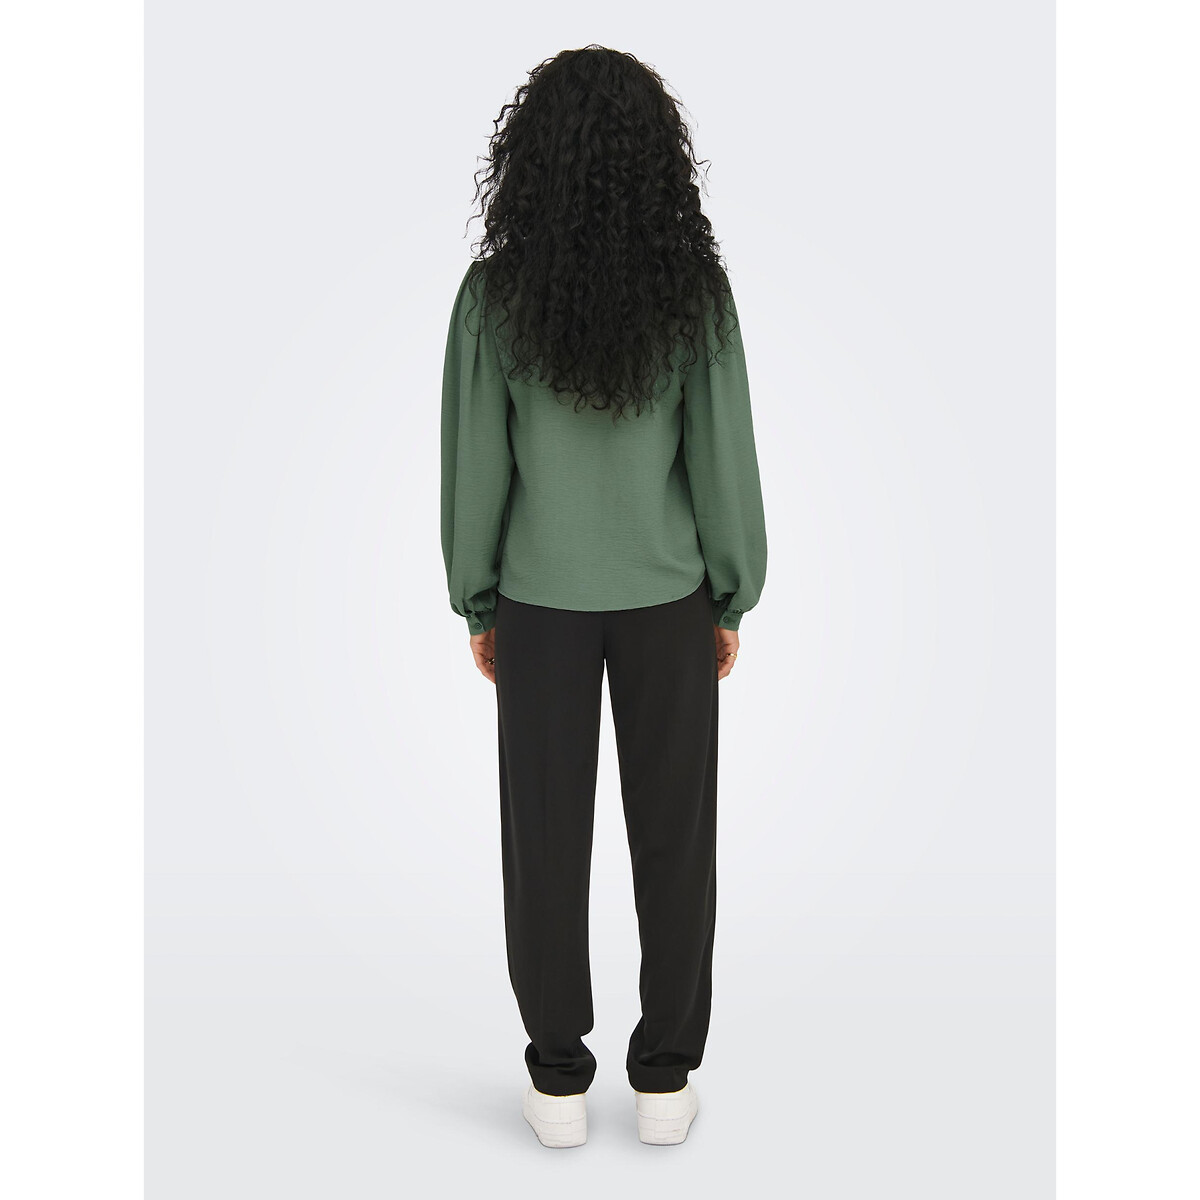 Блузка JDY Блузка С воротником-стойкой и длинными рукавами XL зеленый, размер XL - фото 4